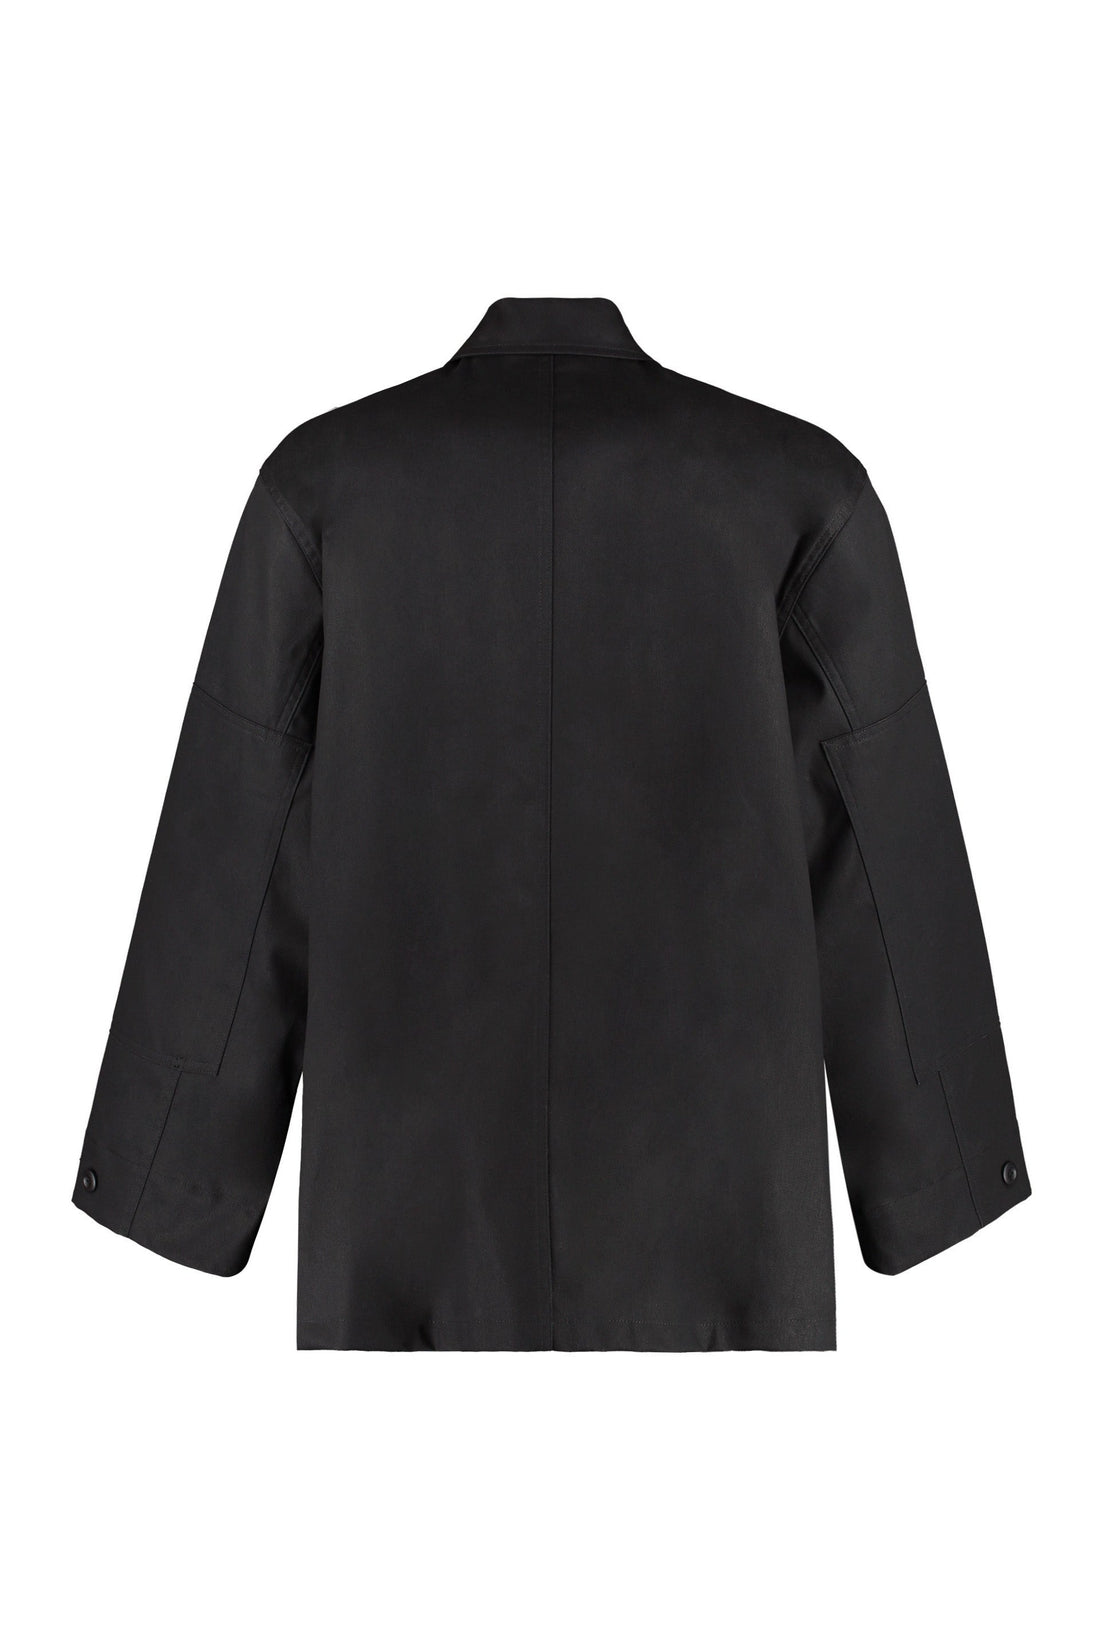 Balenciaga-OUTLET-SALE-Multi-pocket cotton jacket-ARCHIVIST